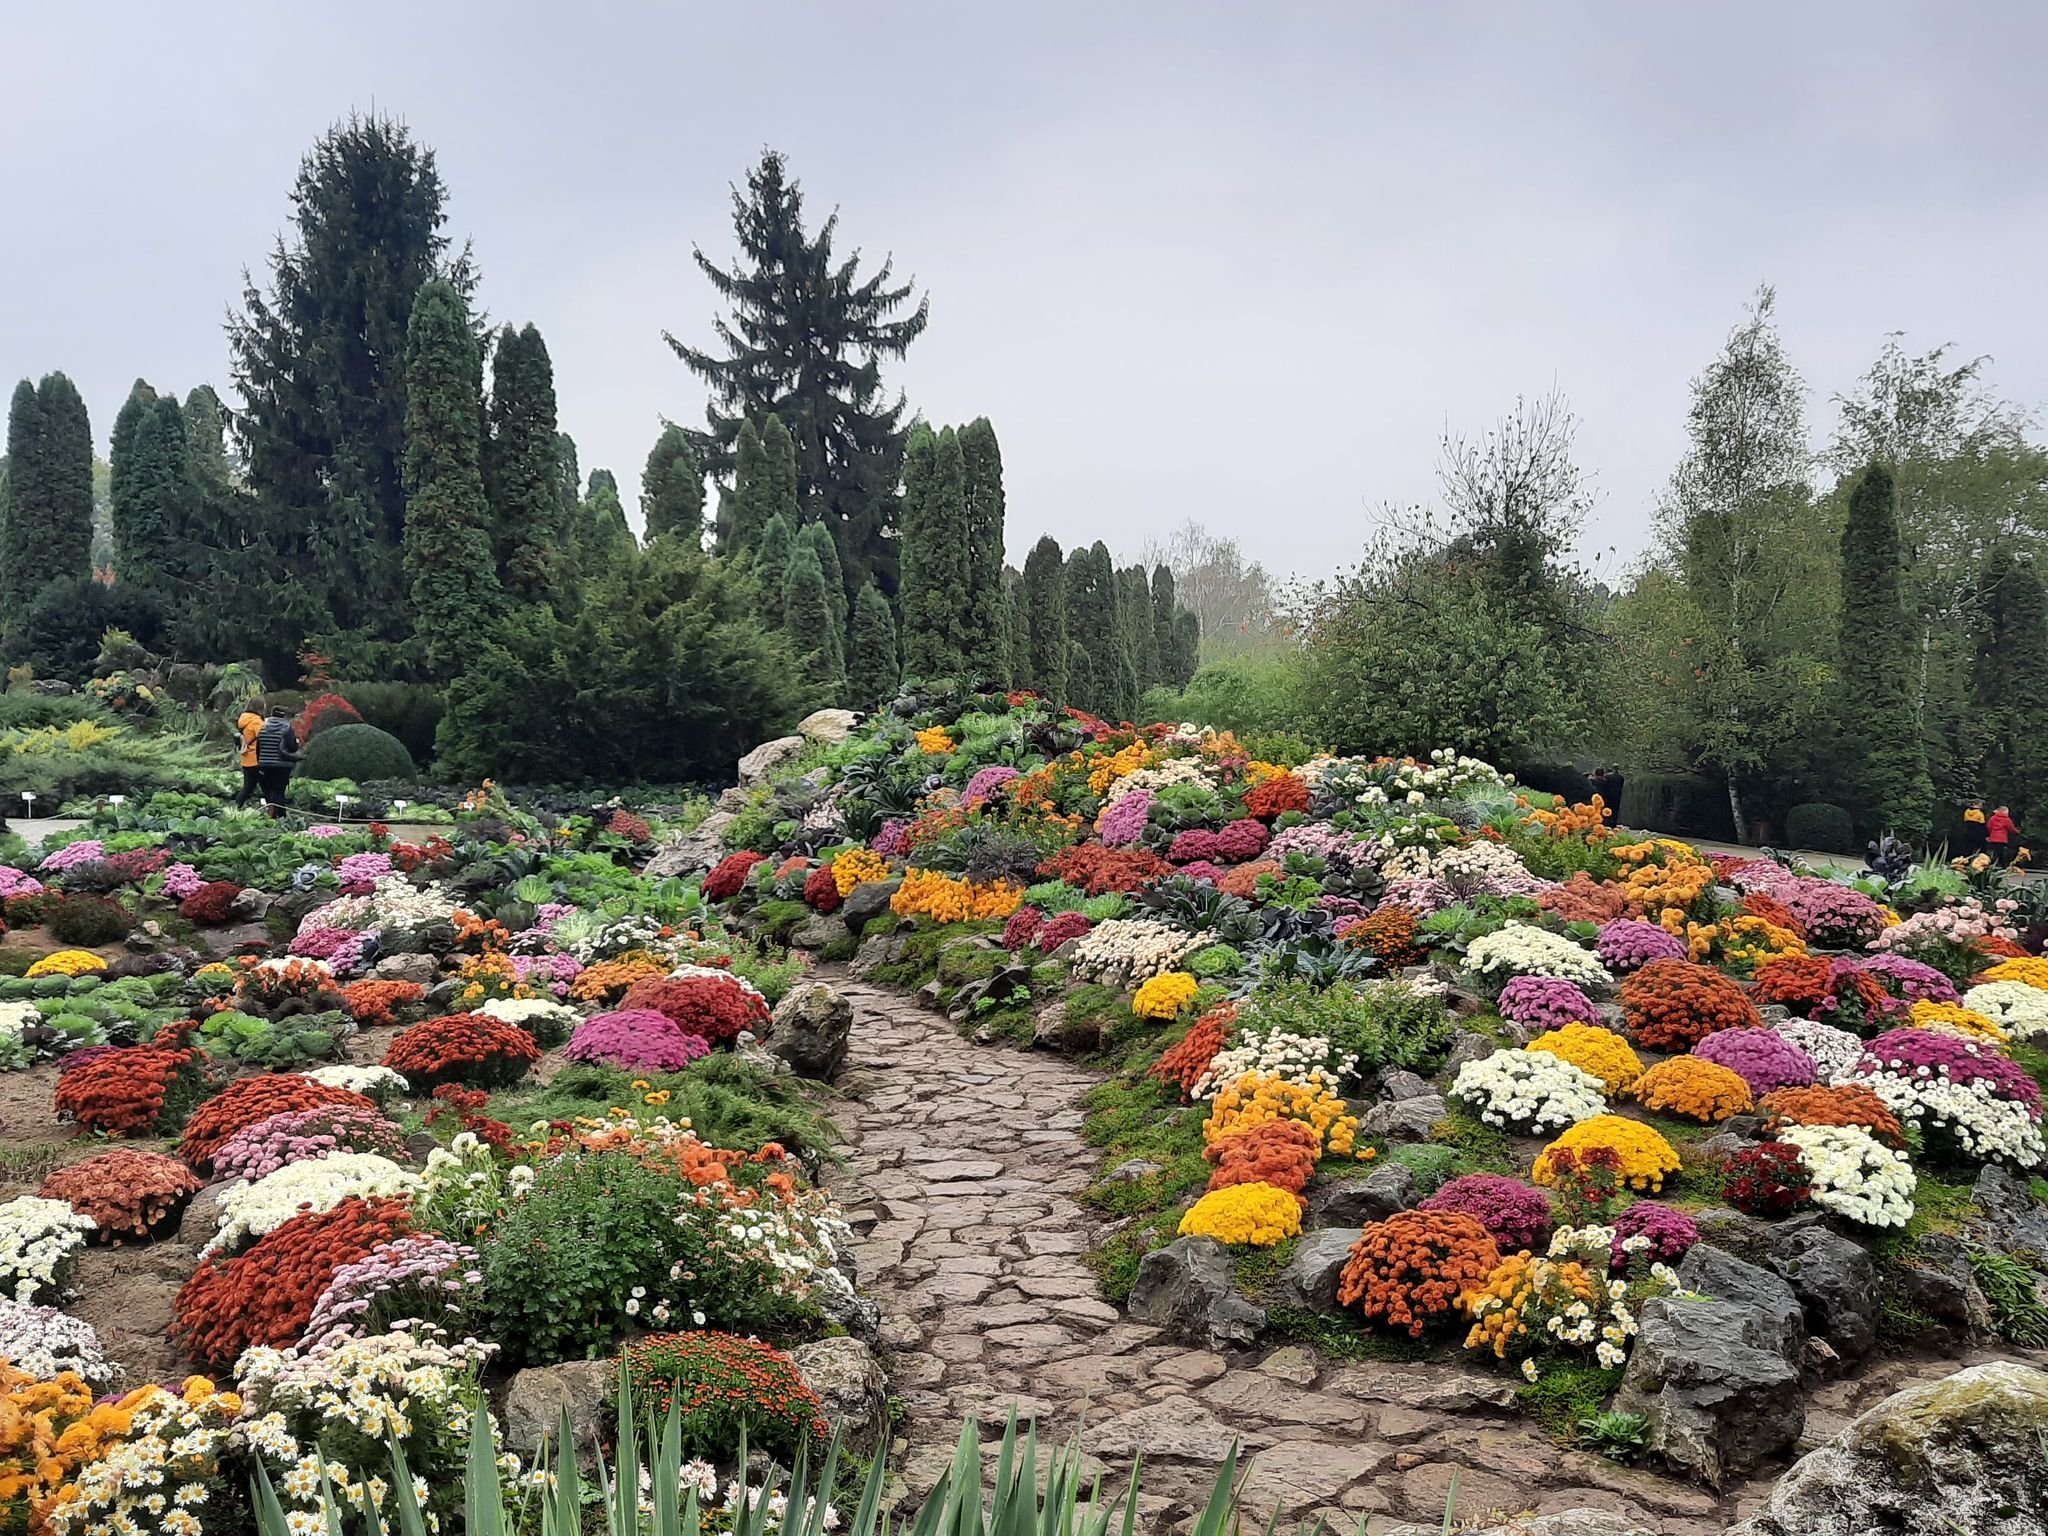  IMAGINI: Flori de toamnă în grădina botanică. Expoziția s-a deschis